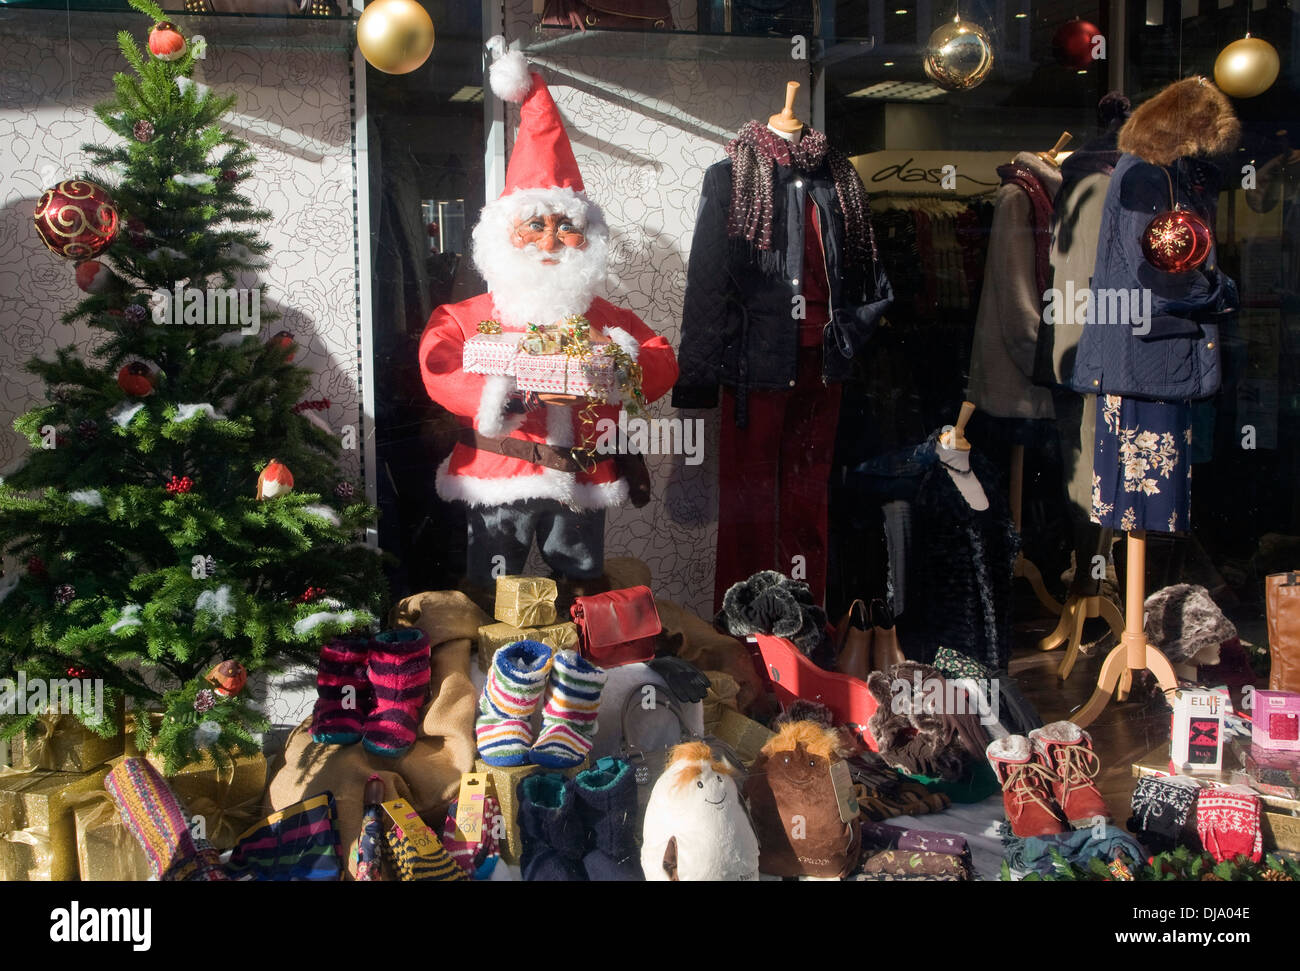 Weihnachtsmann-Fenster anzeigen Russell Smith Shop, Felixstowe, Suffolk, England Stockfoto